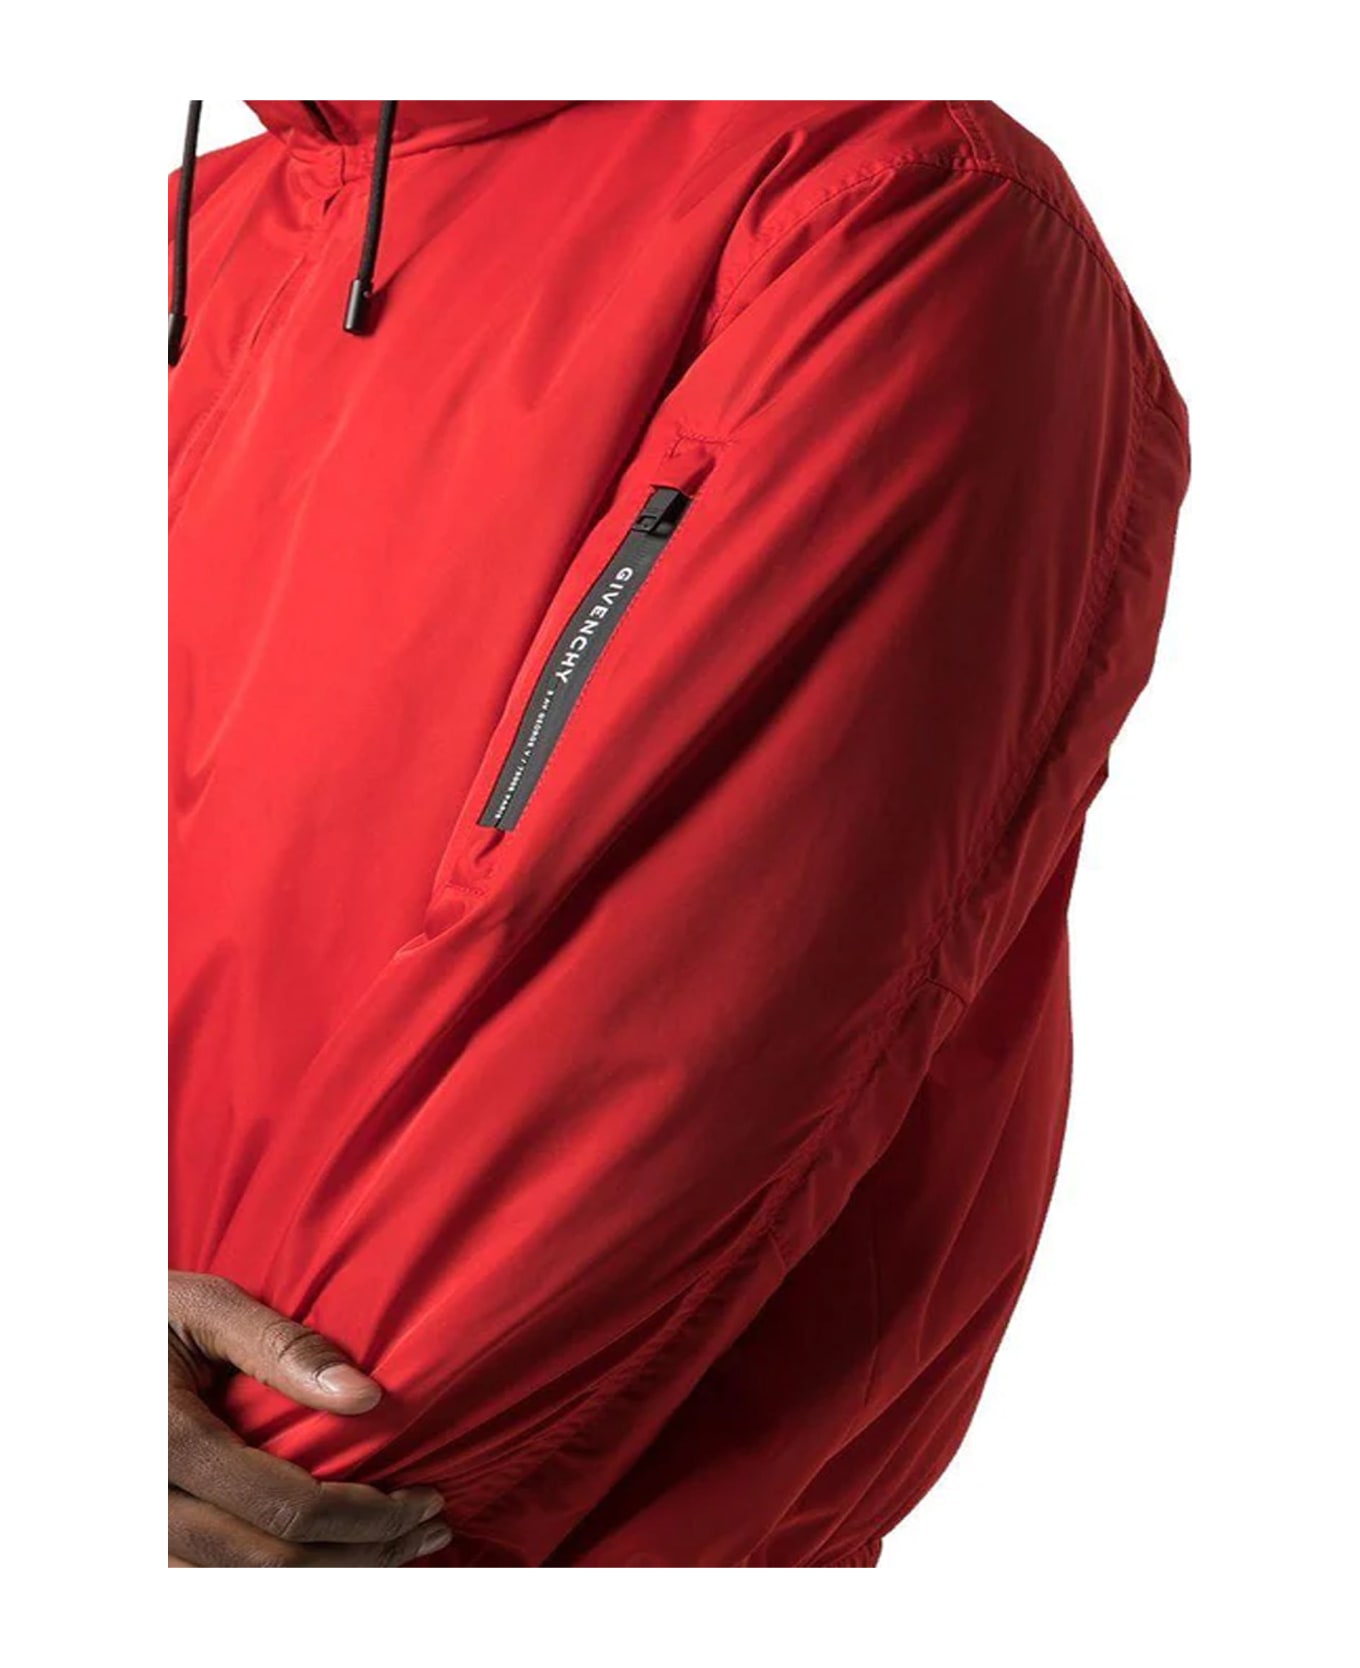 Givenchy Windbreaker Jacket - Red ジャケット